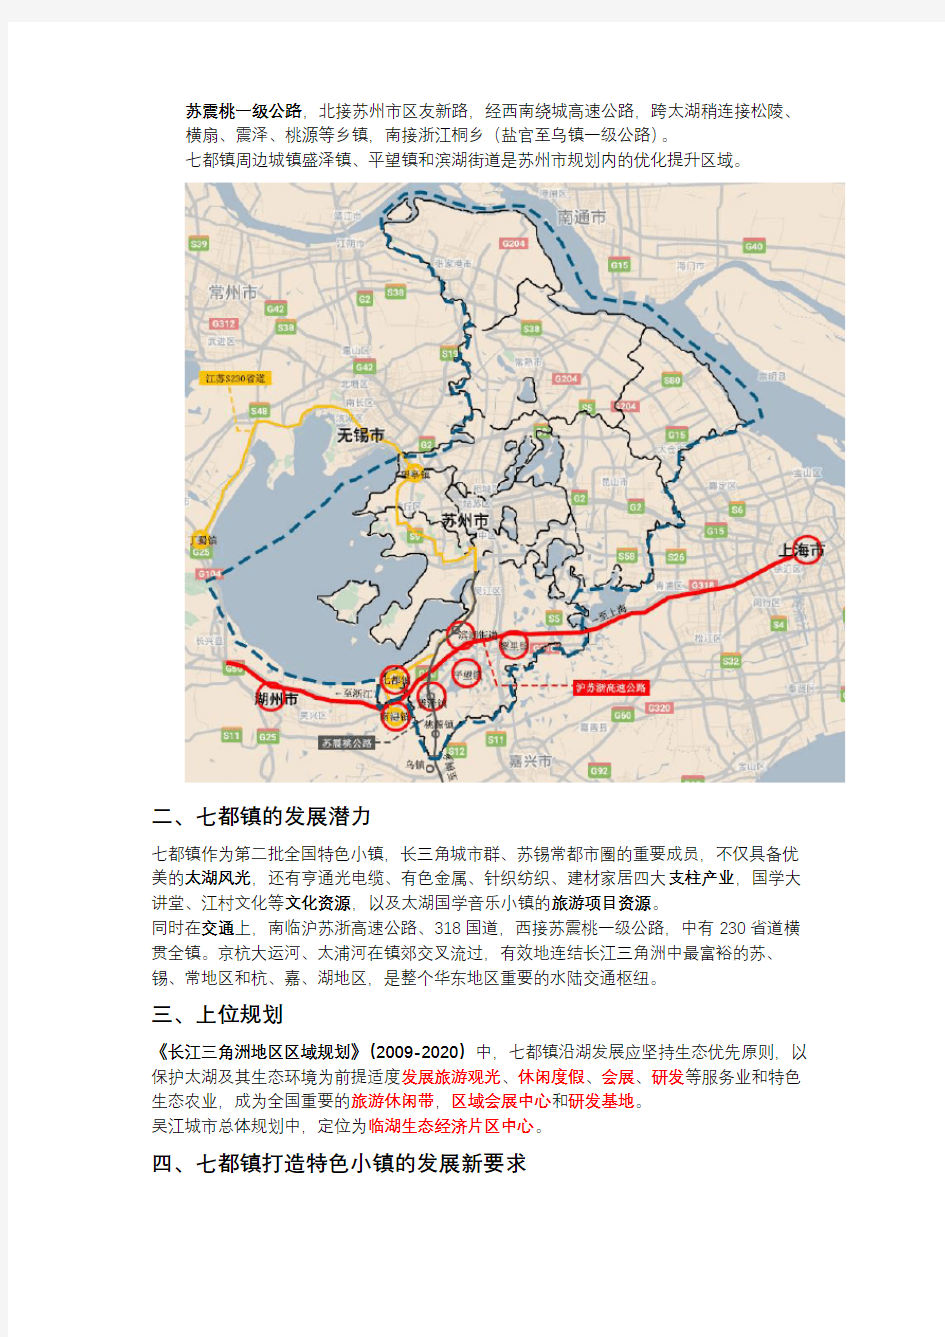 七都镇总体规划方案(2018-2035)